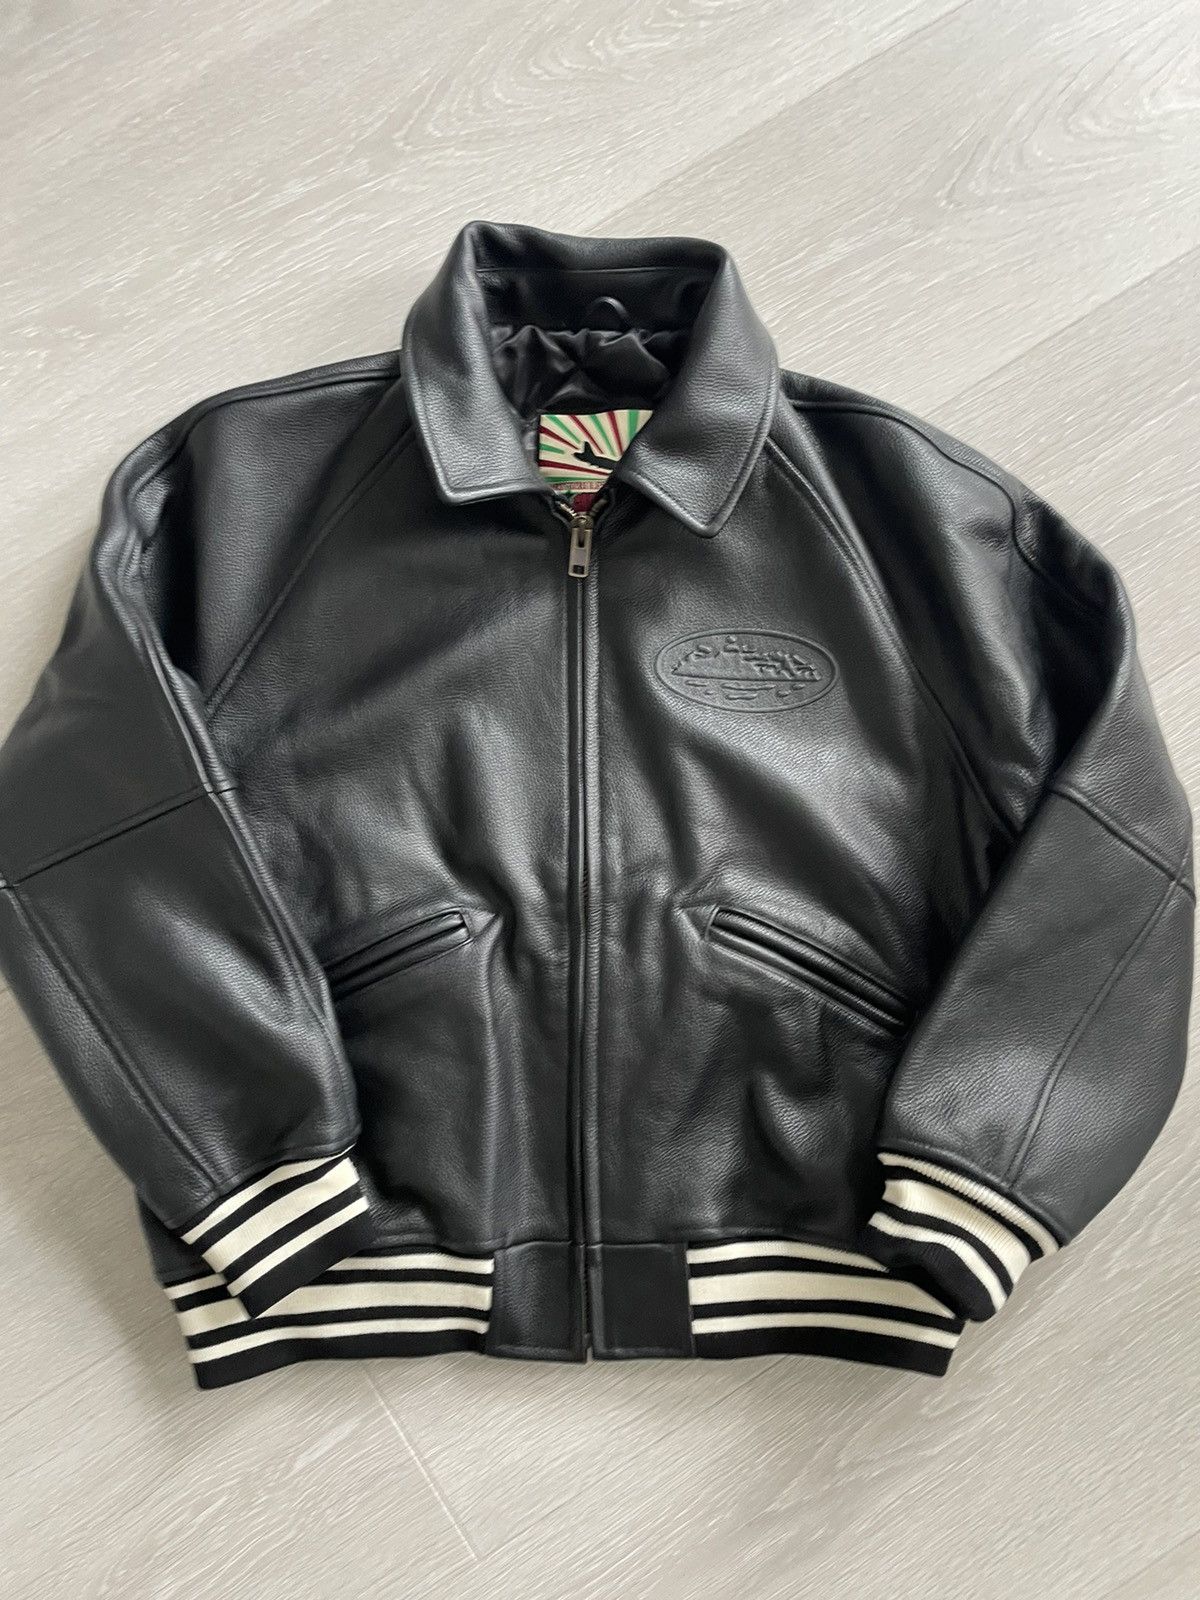 Corteiz Corteiz Leather Jacket | Grailed